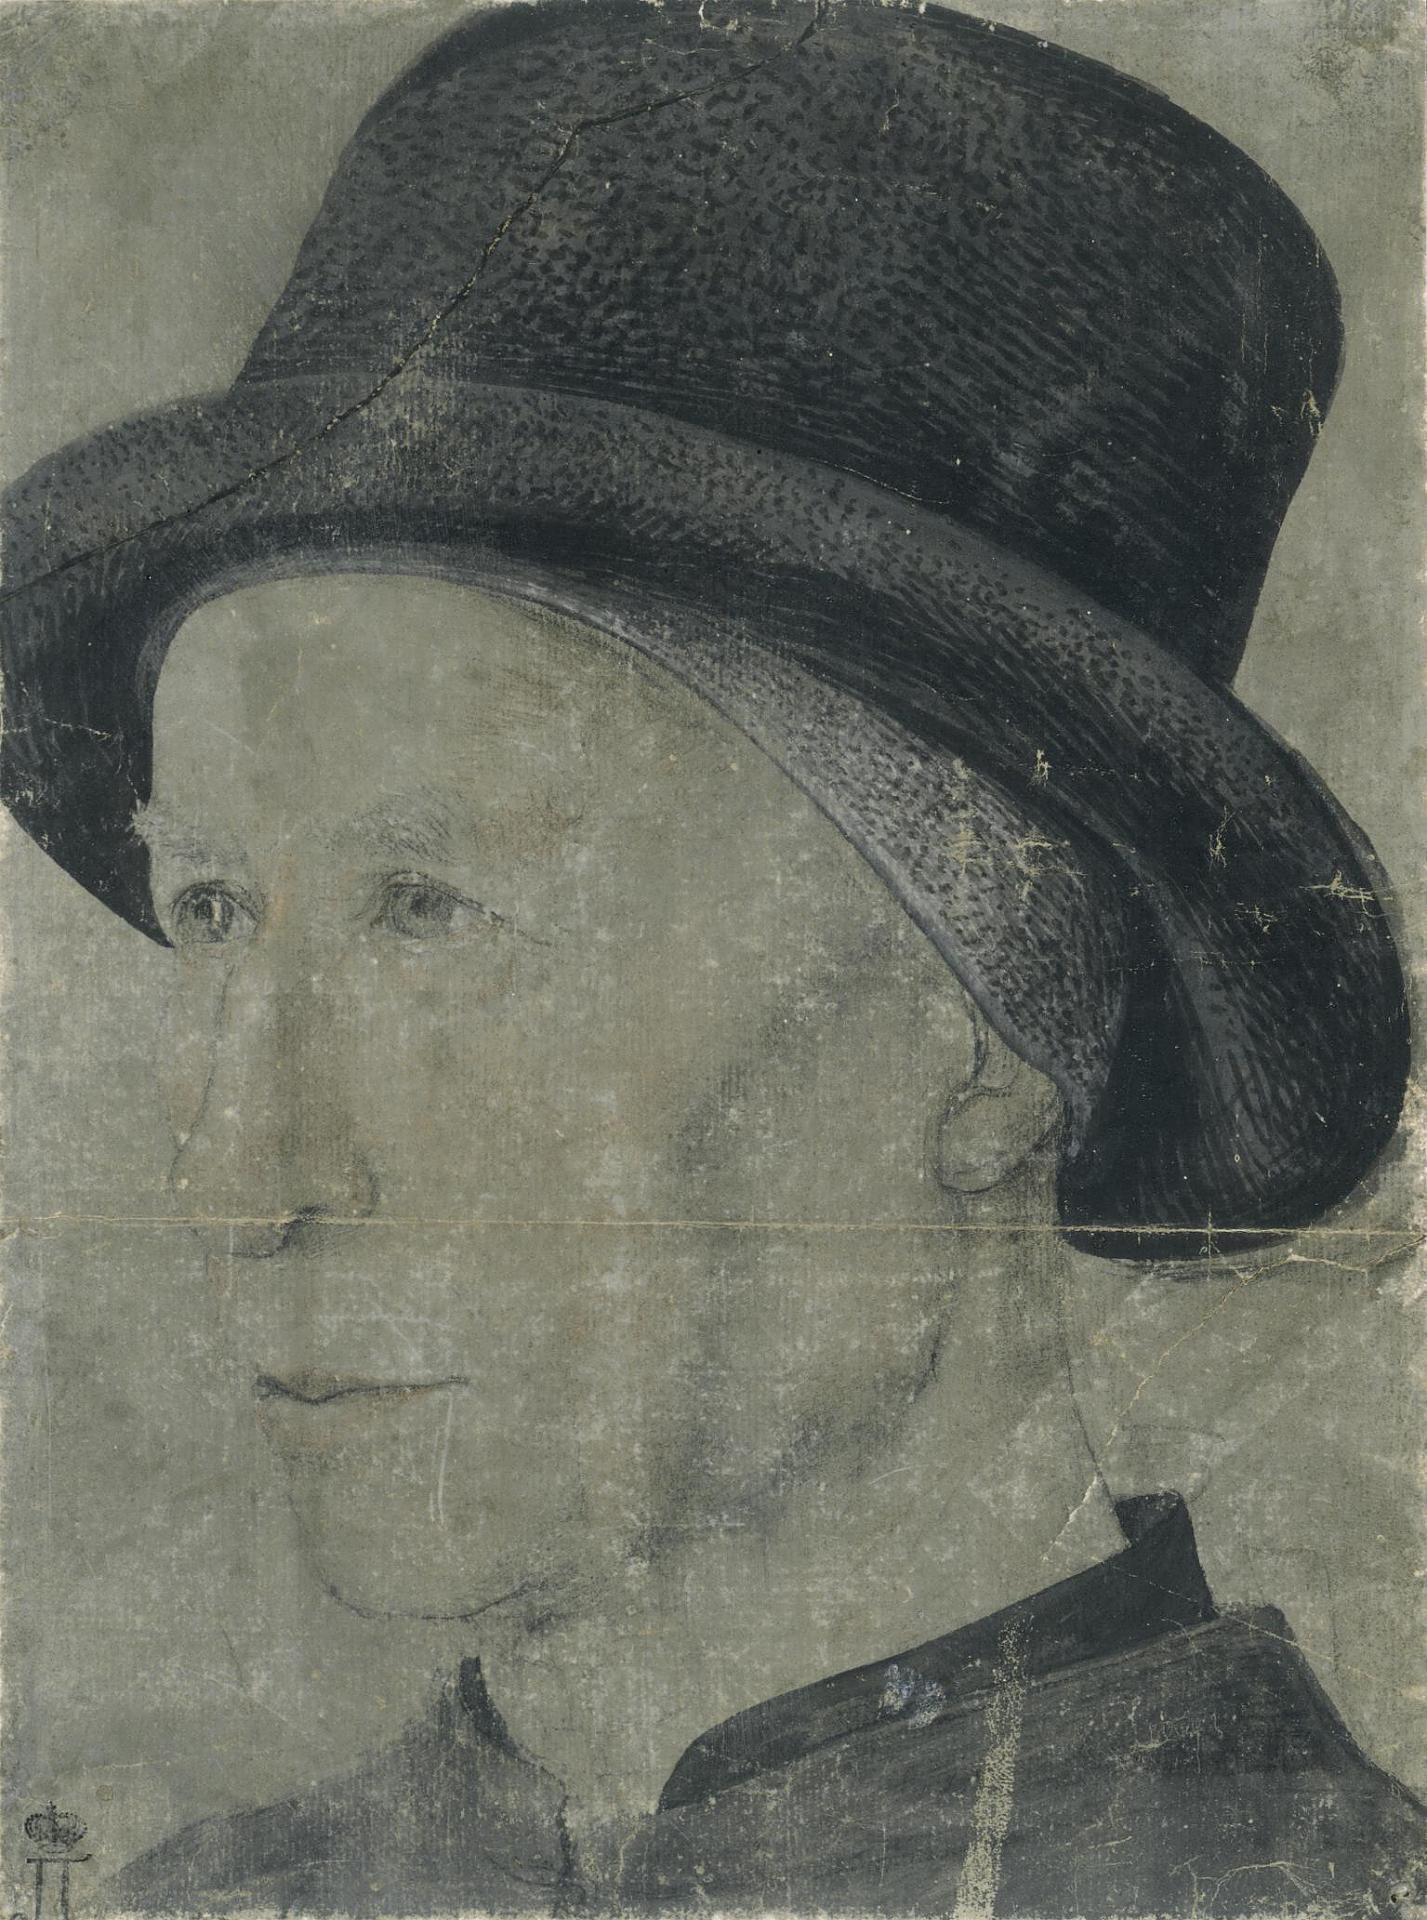 Жан Фуке. "Мужской портрет". Около 1455. Эрмитаж, санкт-Петербург.